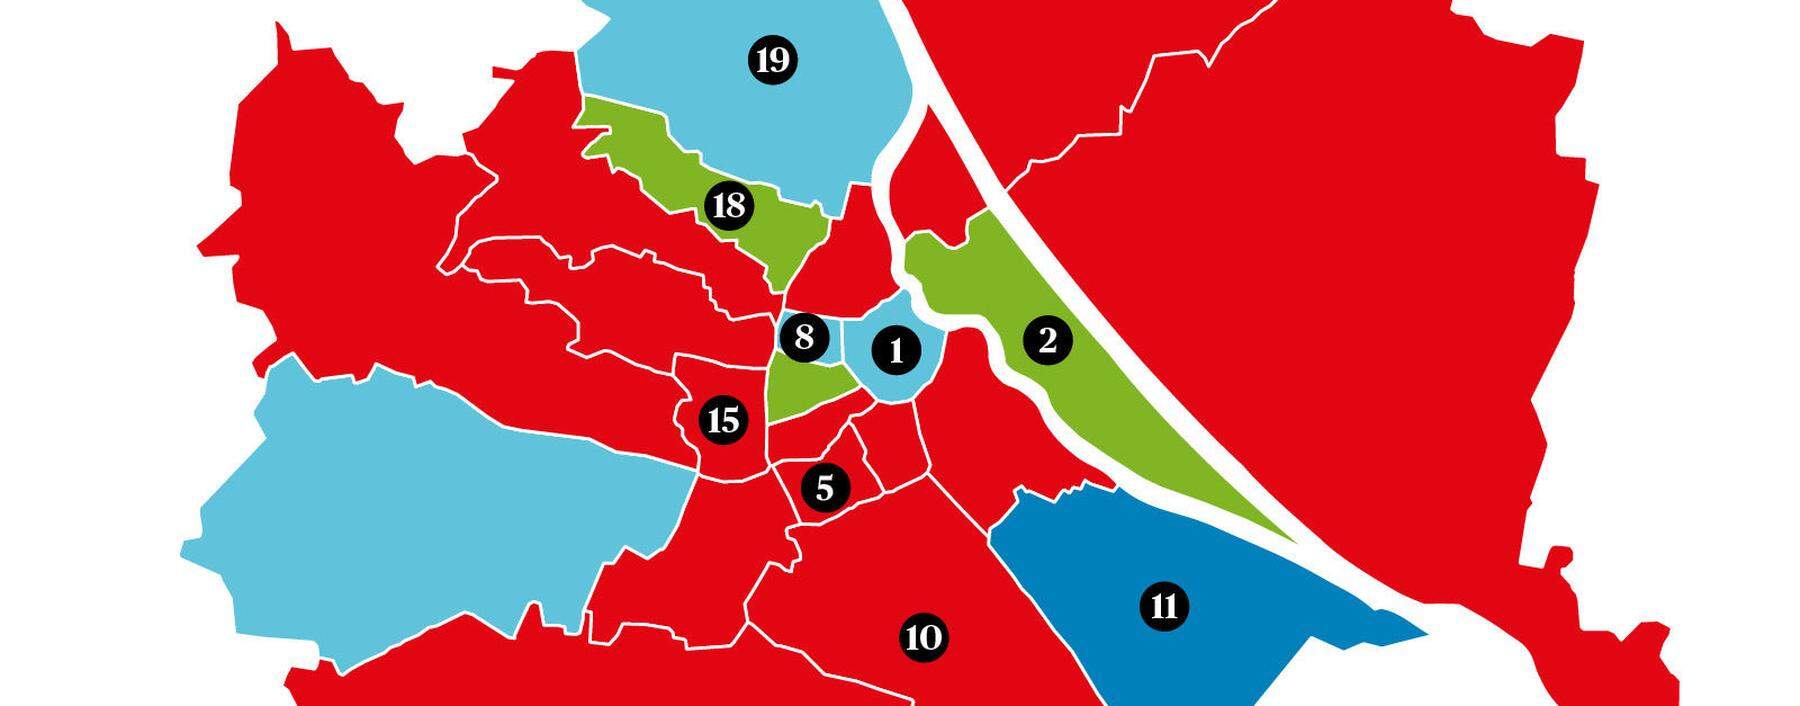 Viele der 23 Wiener Bezirke sind heiß umkämpft.